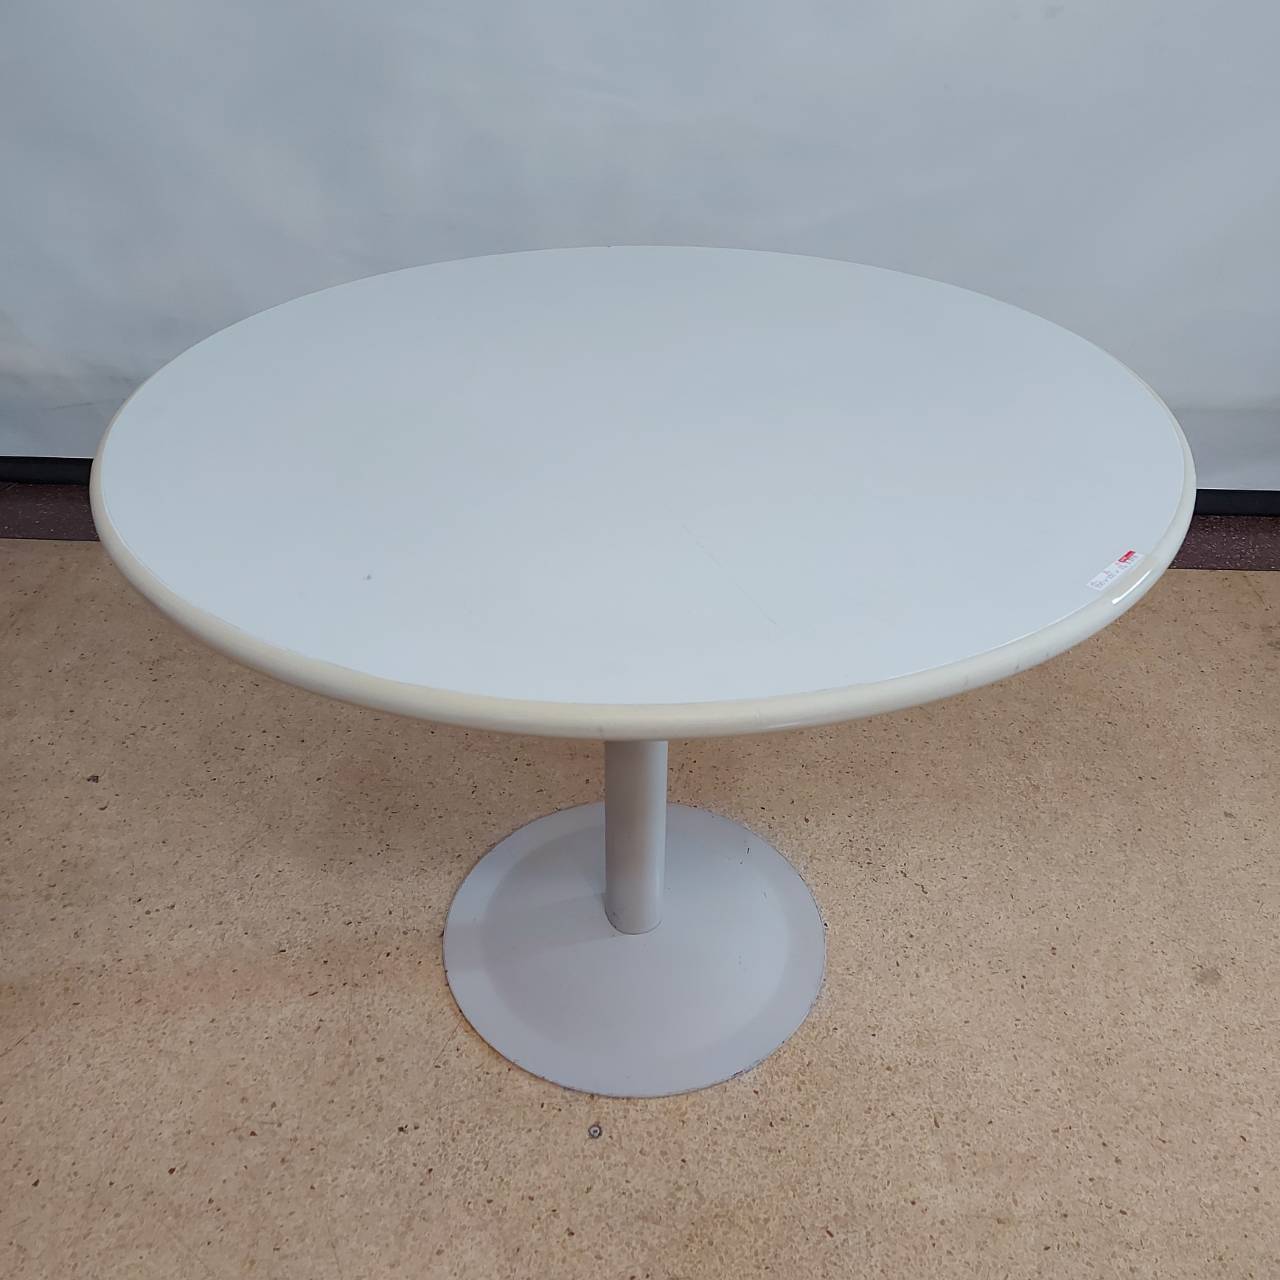 โต๊ะประชุมกลมสีเทาขอบยาง ขาเหล็กเทา